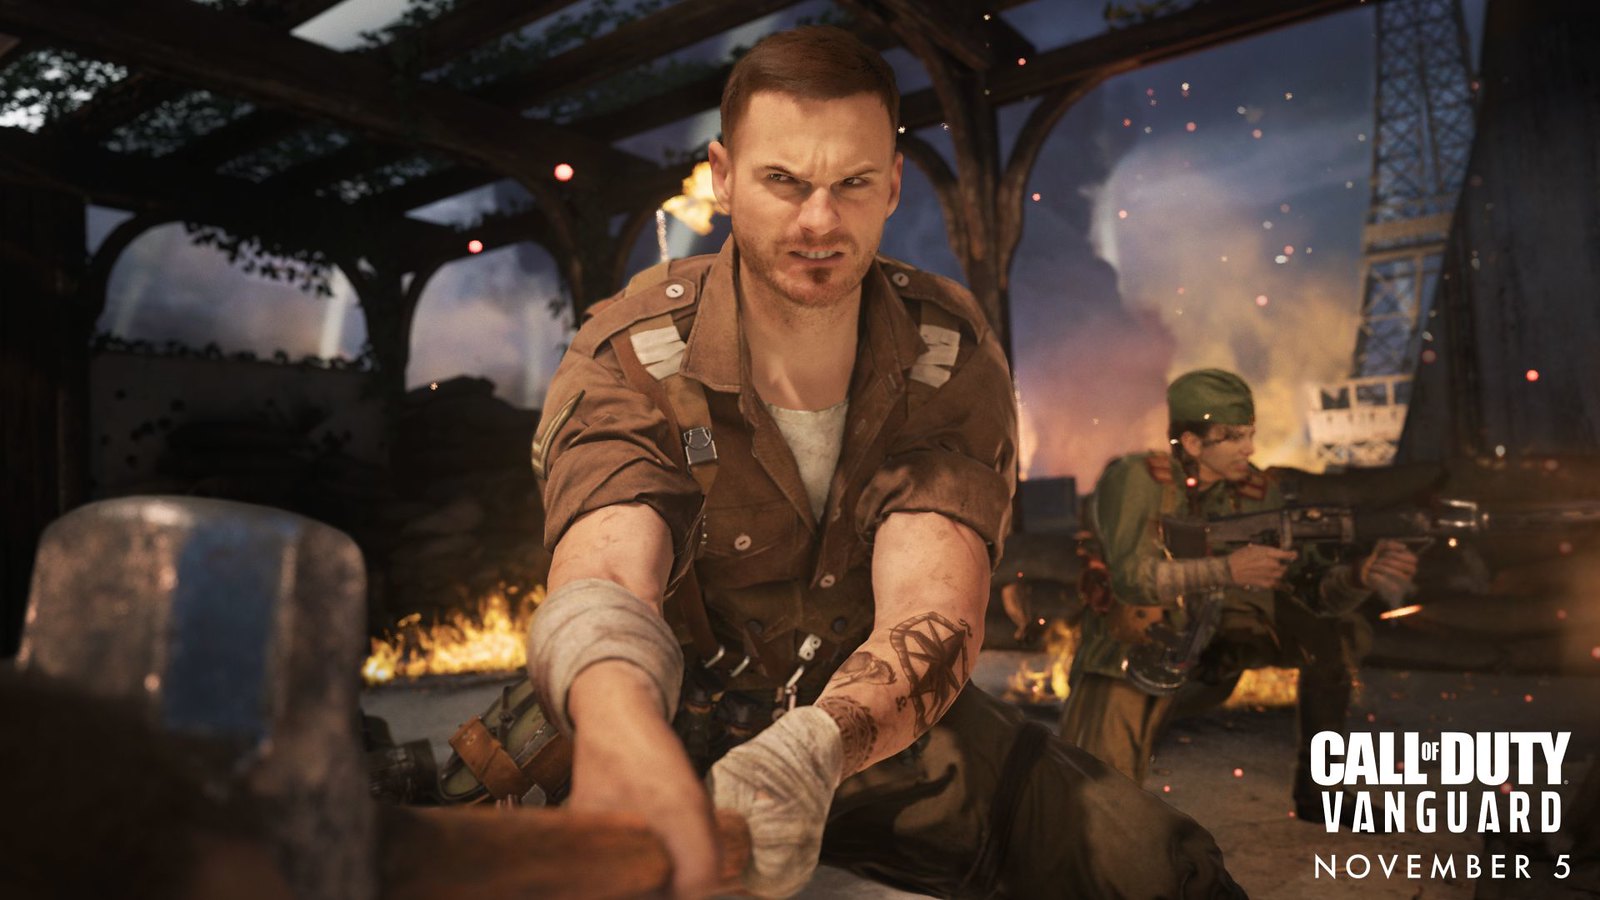 Call of Duty: Vanguard Multiplayer Beta